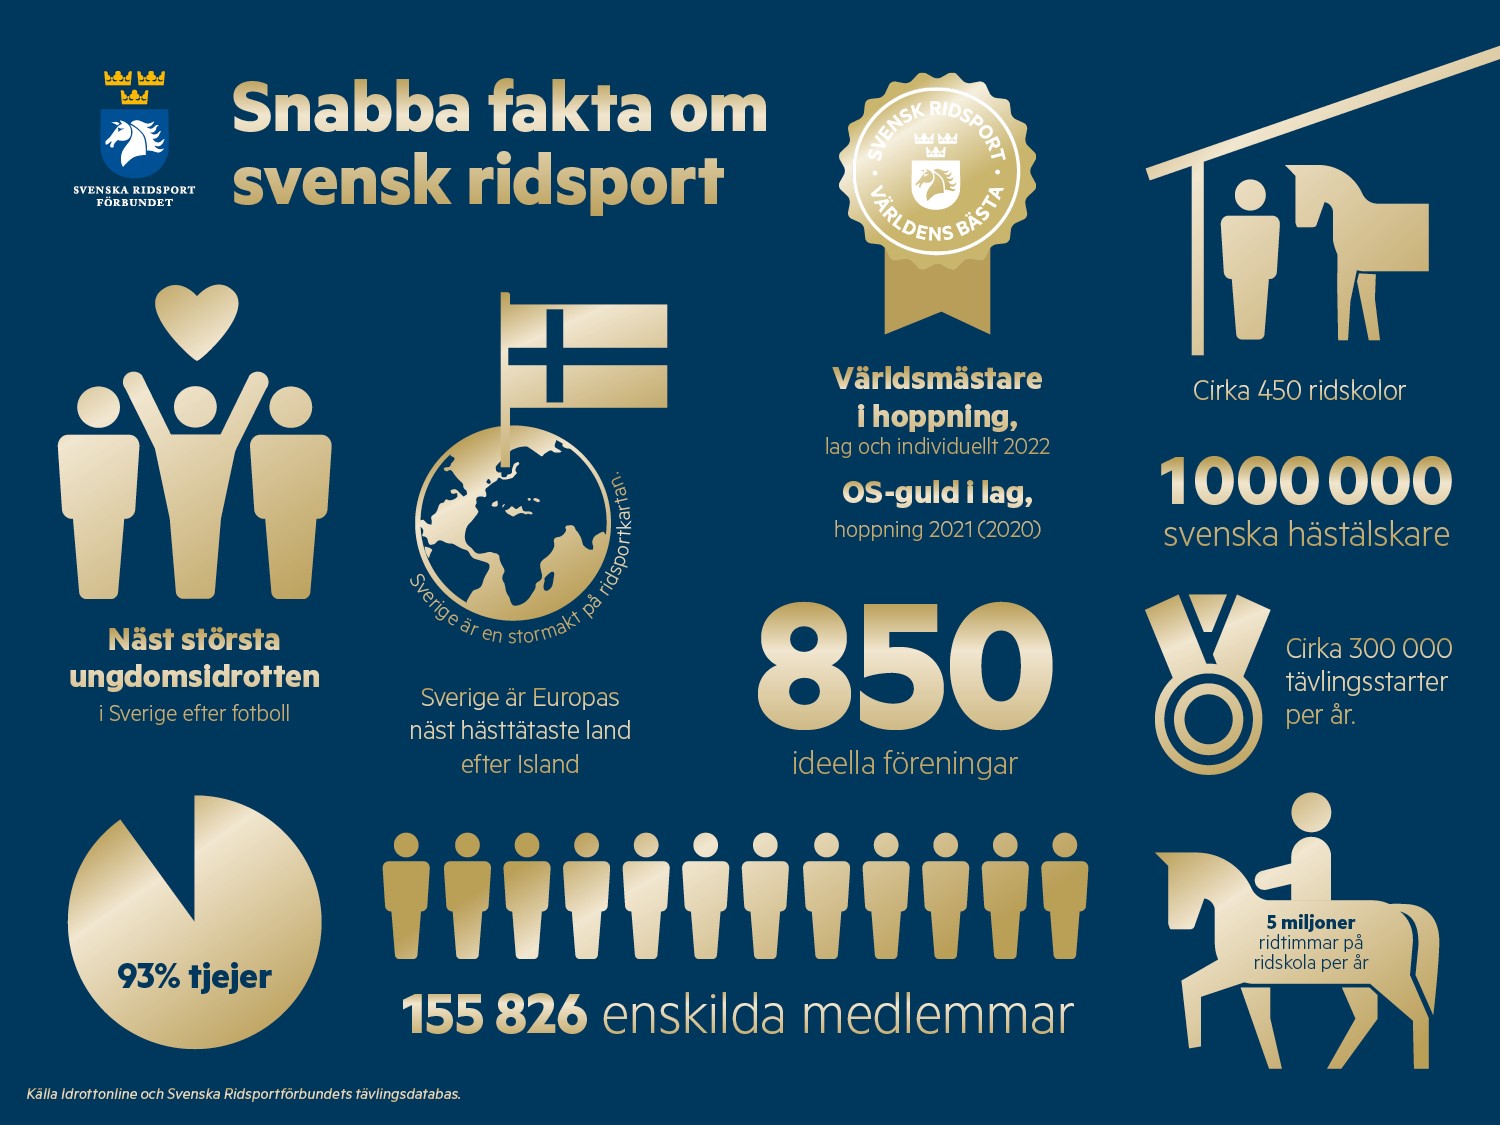 Snabba fakta om Svenska Ridsportförbundet